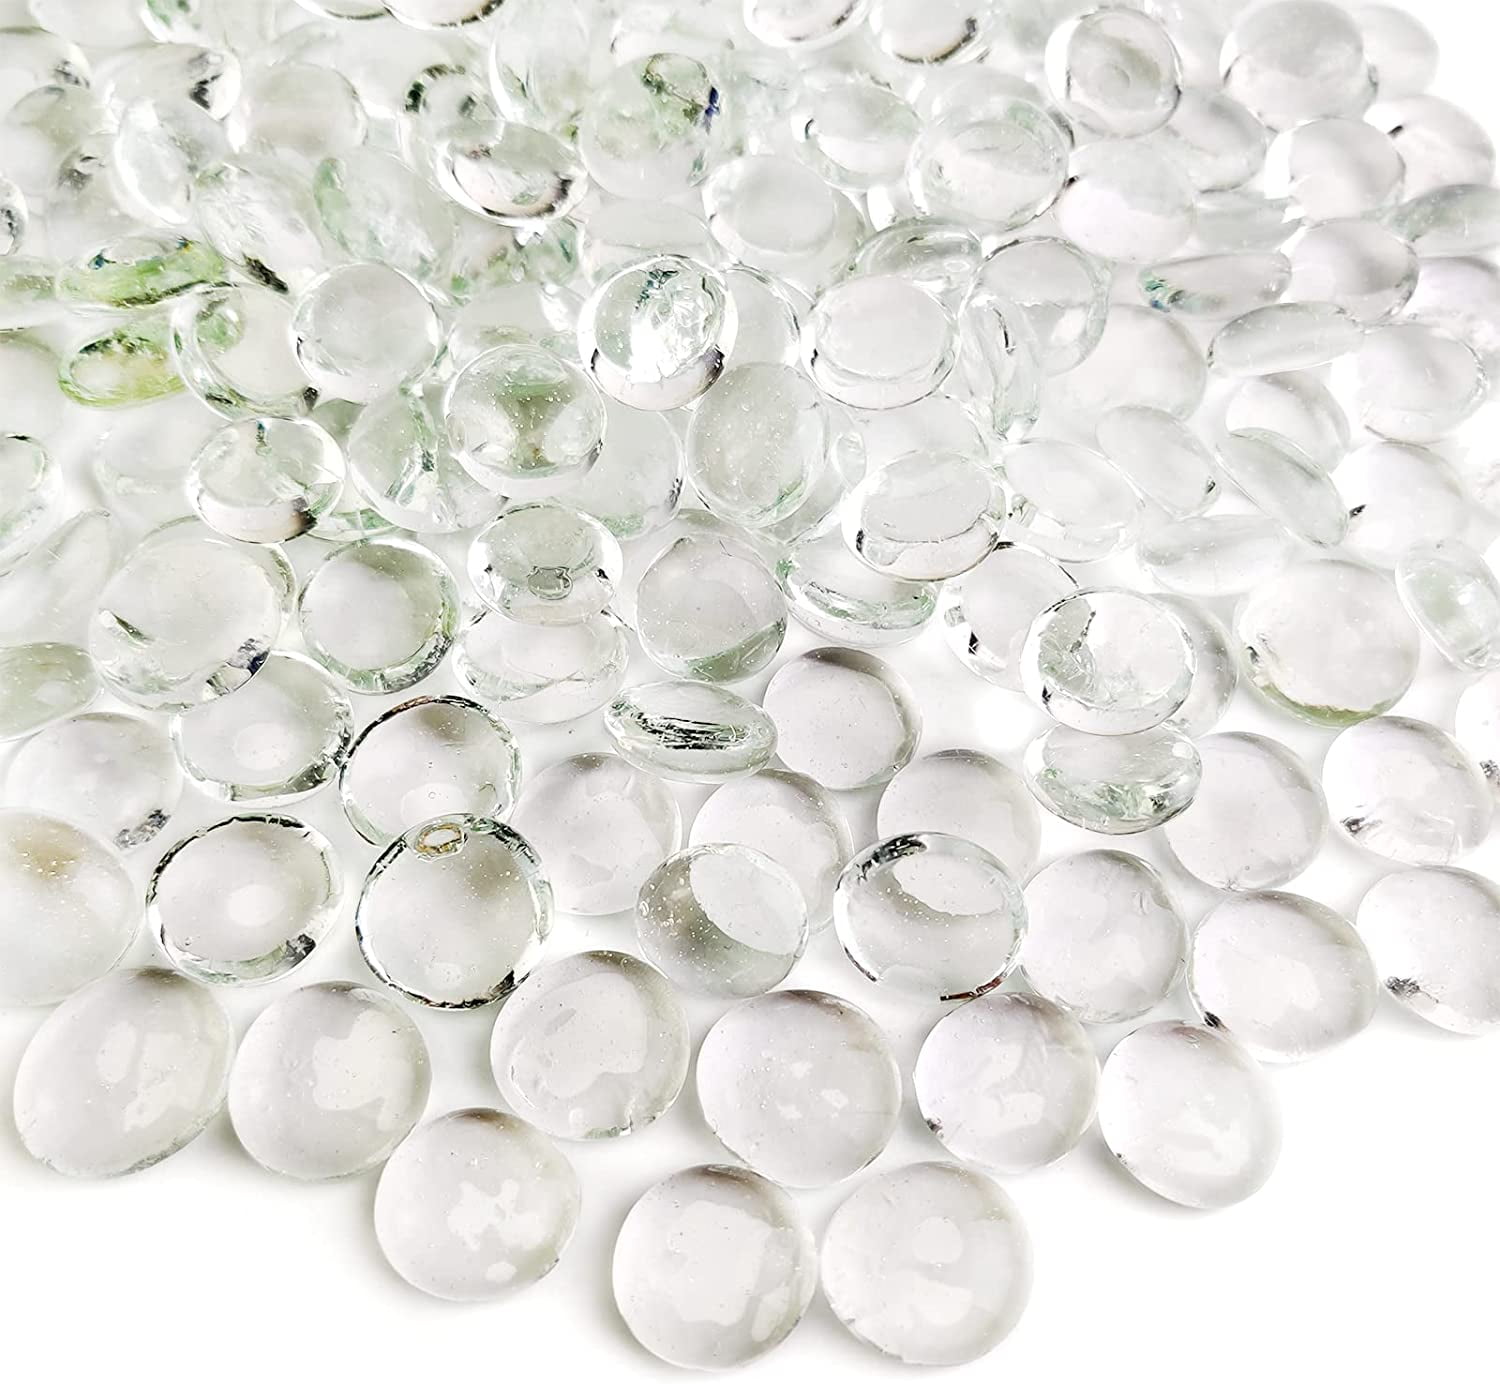 Entervending Acrylic Gems - Pebbles Vase Filler - 10.6 OZ Jewels - Assorted  Color Plastic Gemstones - 0.6 Plastic Gem - Table Scatters Crystals 